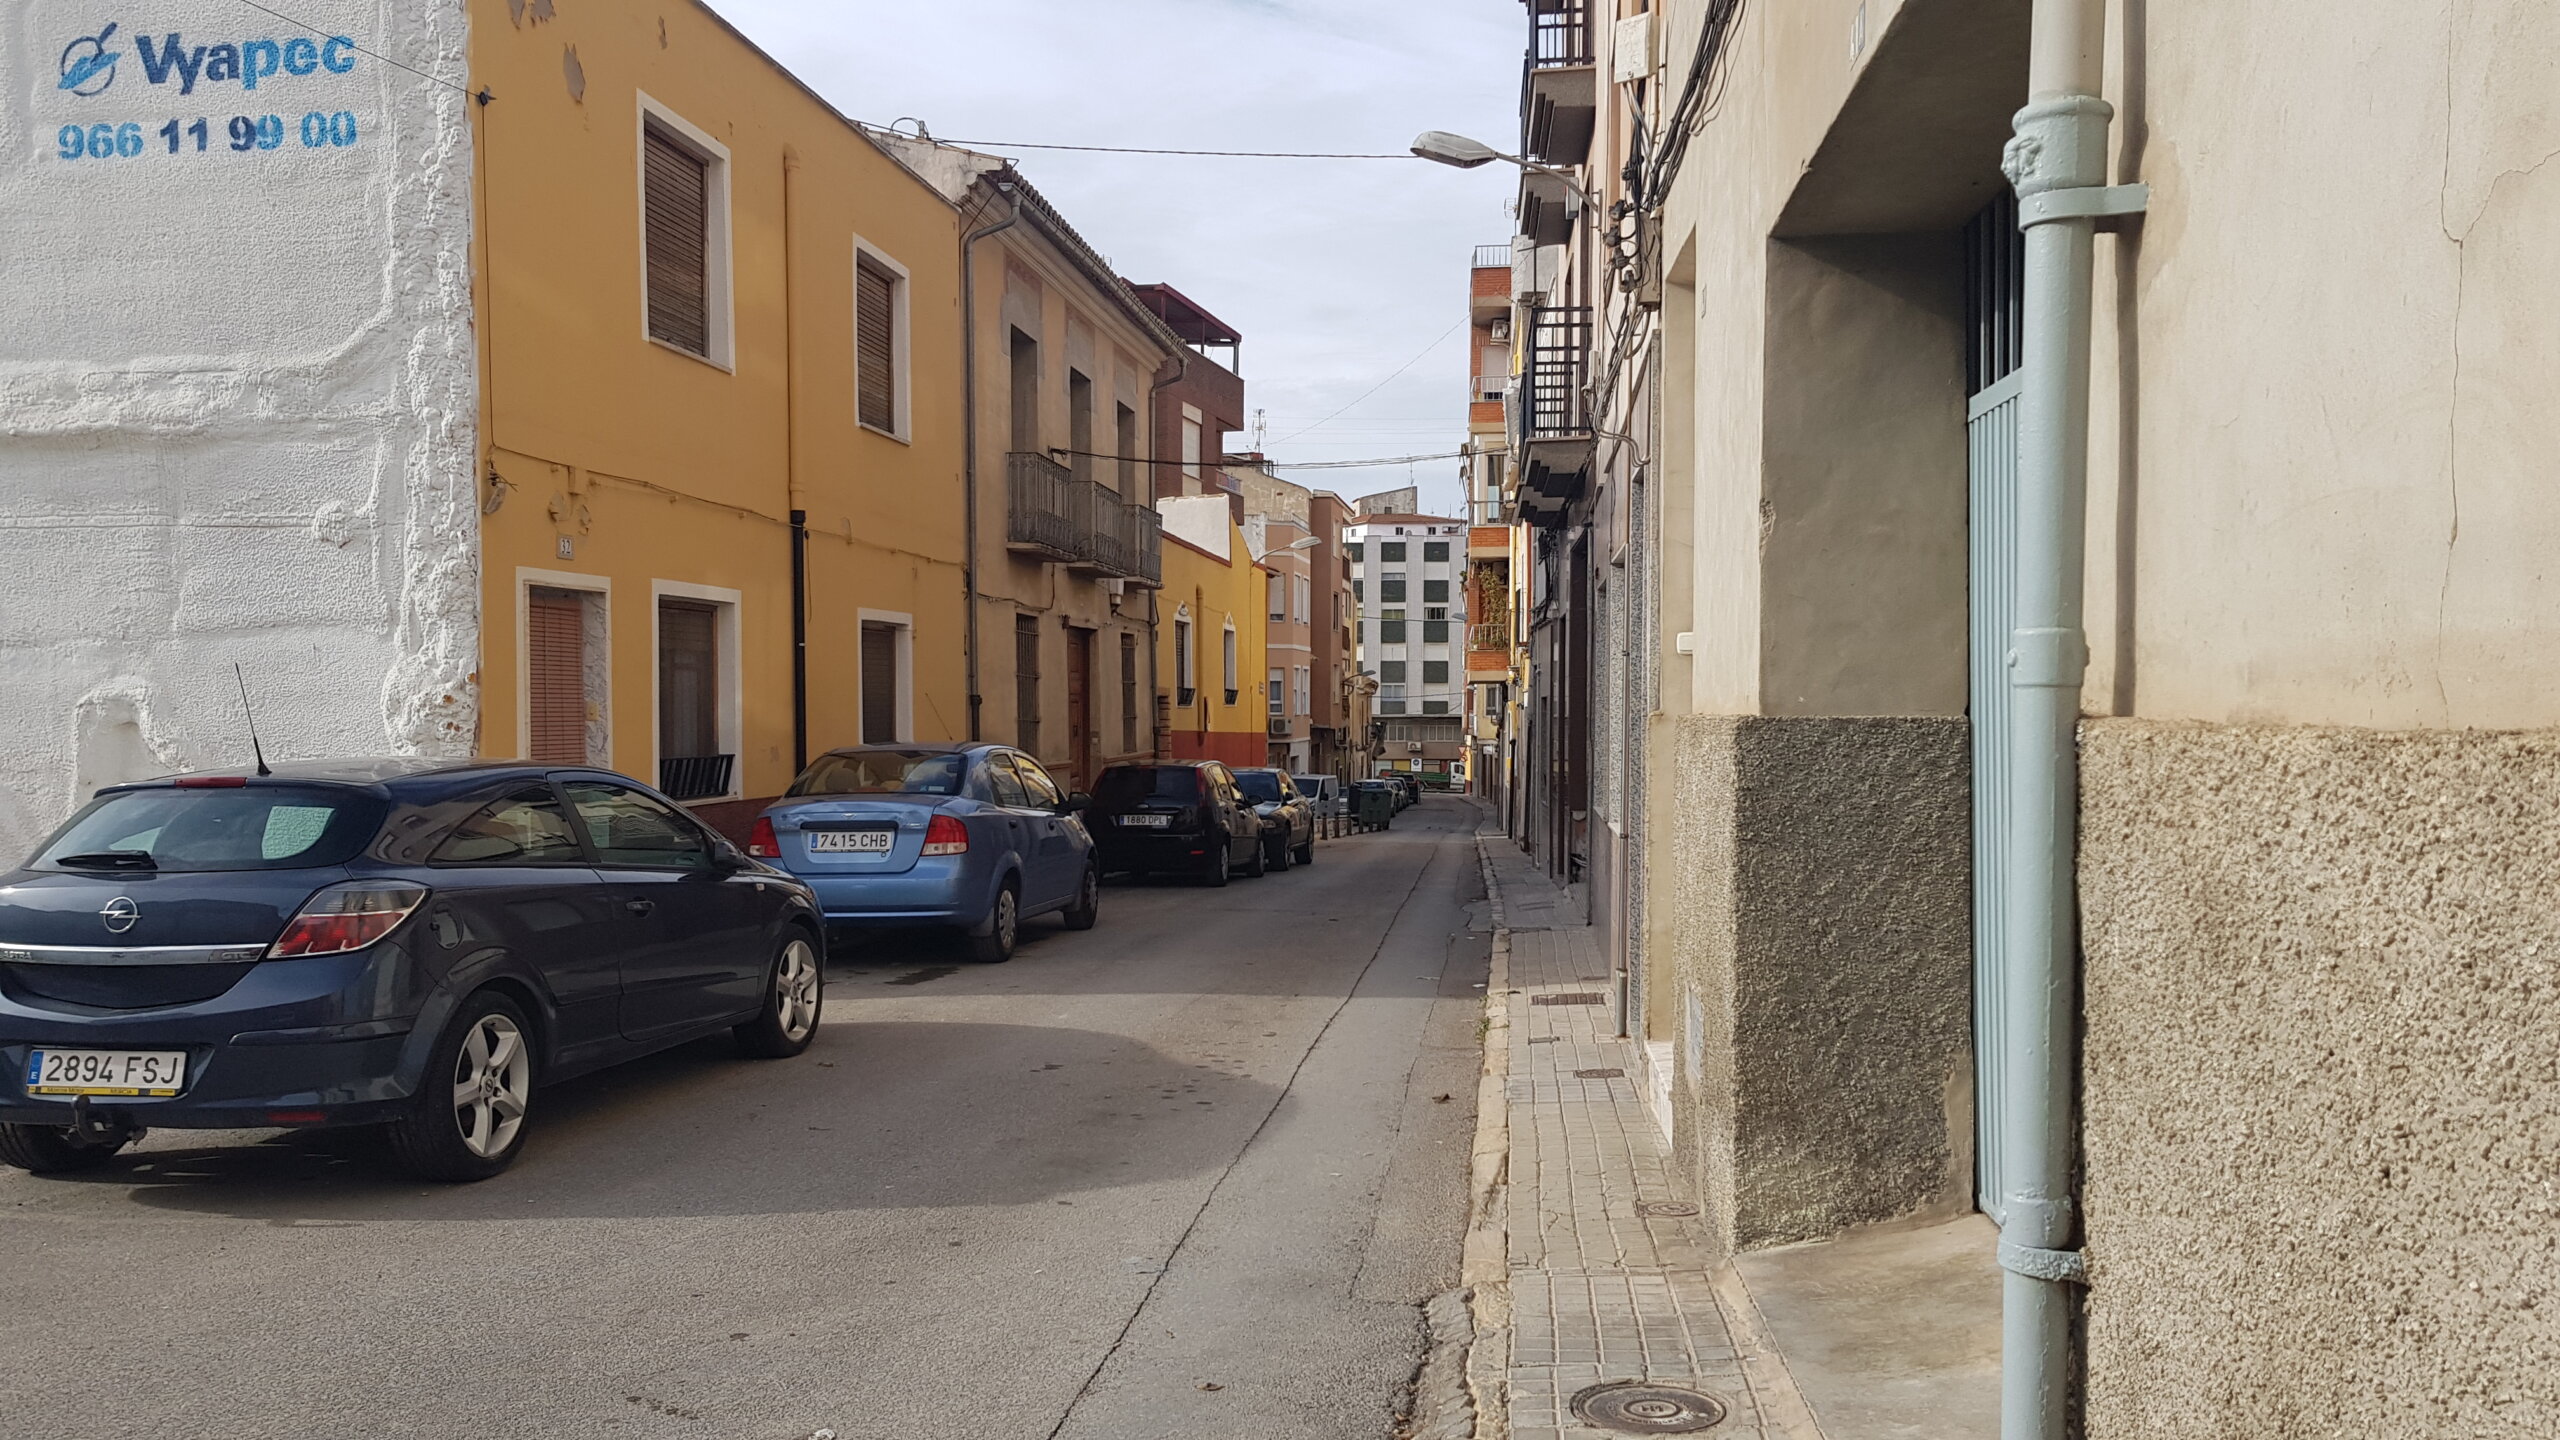 Prevén zonas ajardinadas y arbolado en la reurbanización de la calle Verónica y plaza Maestro Moltó en Villena